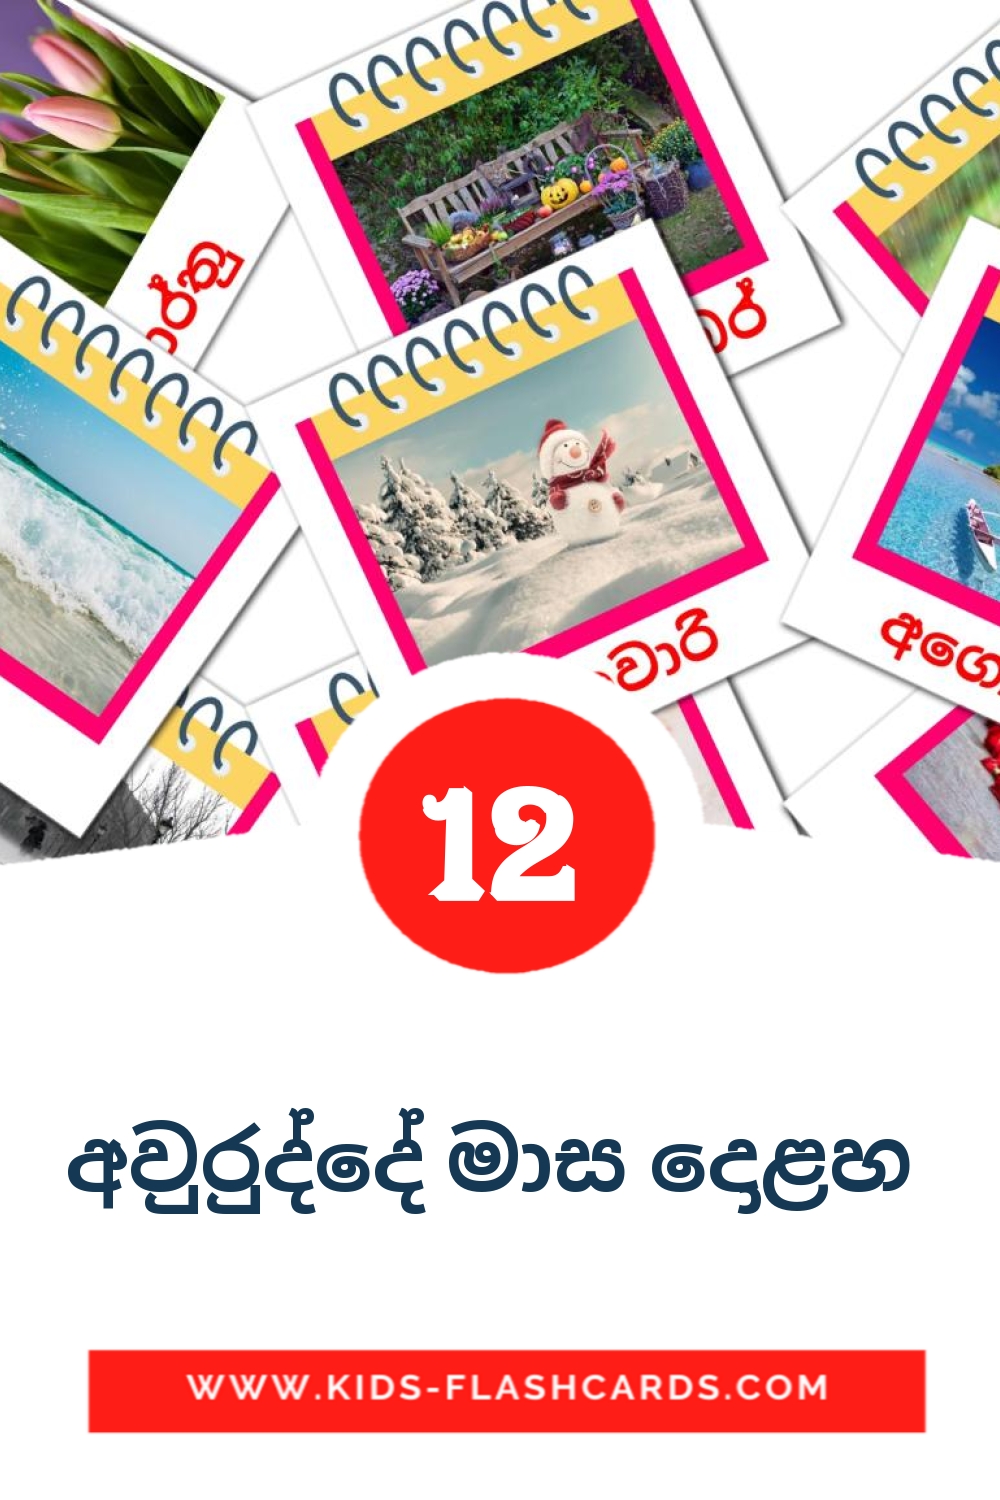 12 tarjetas didacticas de අවුරුද්දේ මාස දොළහ  para el jardín de infancia en sinhala